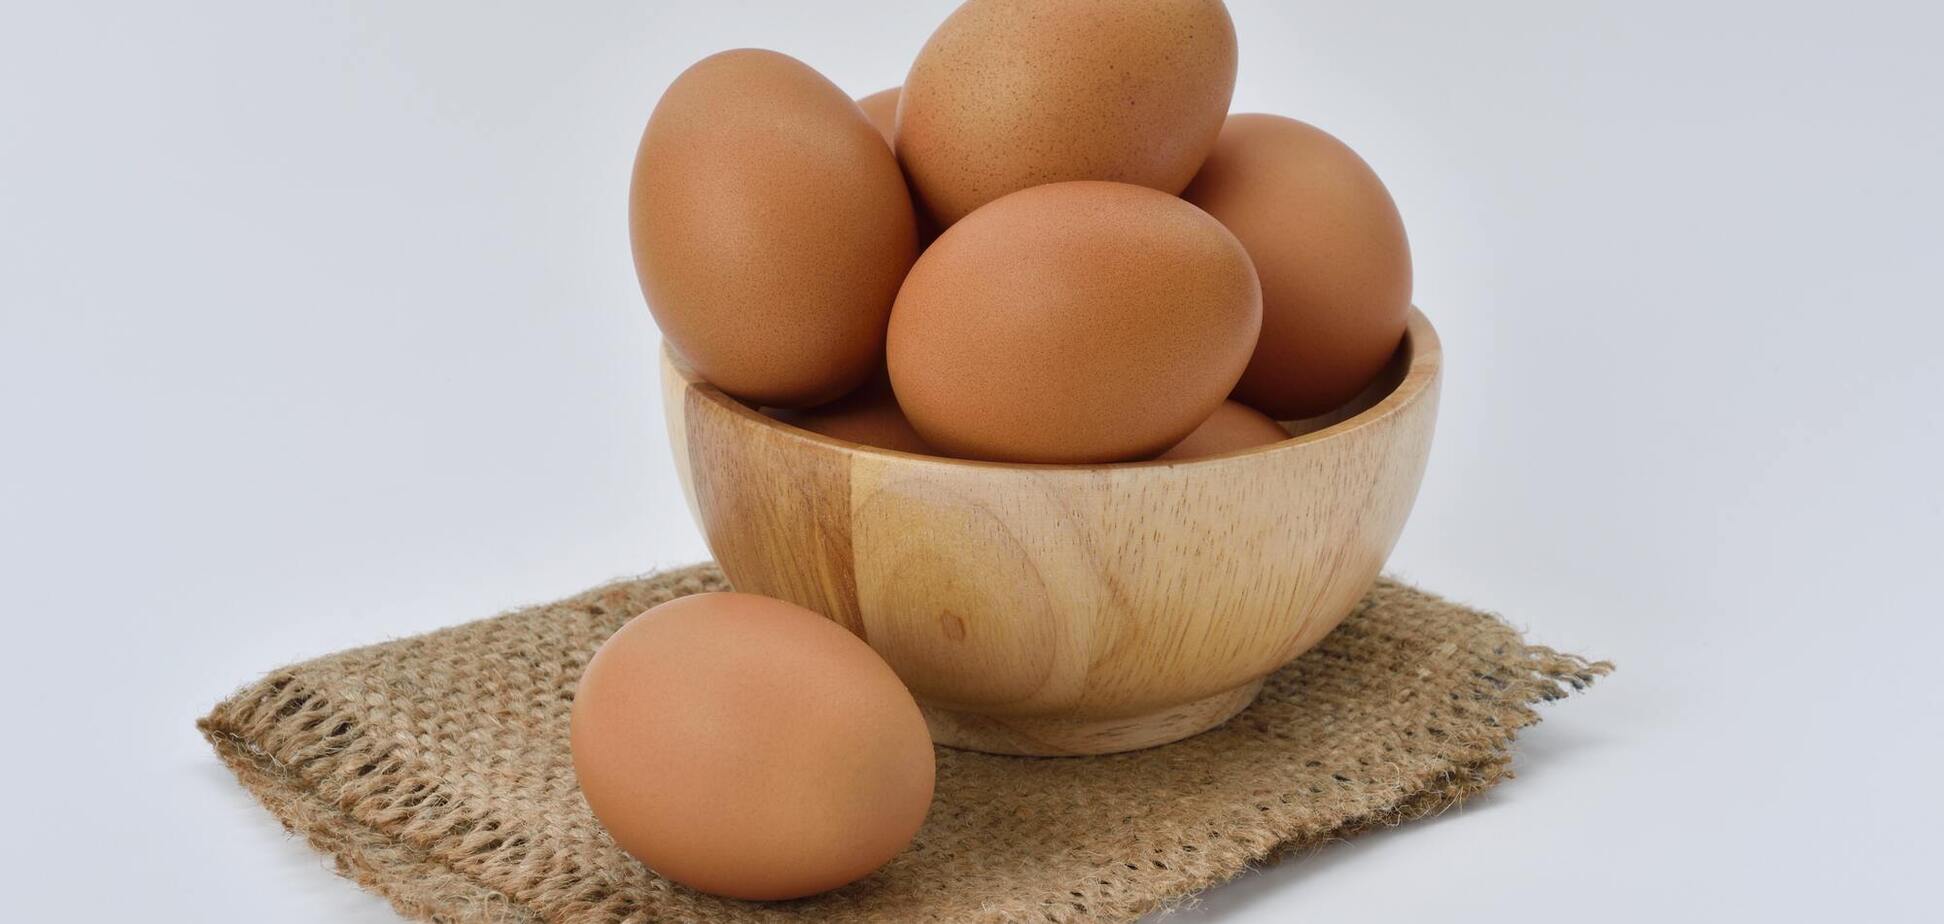 Как выбрать качественные яйца по номеру: что означает отметка